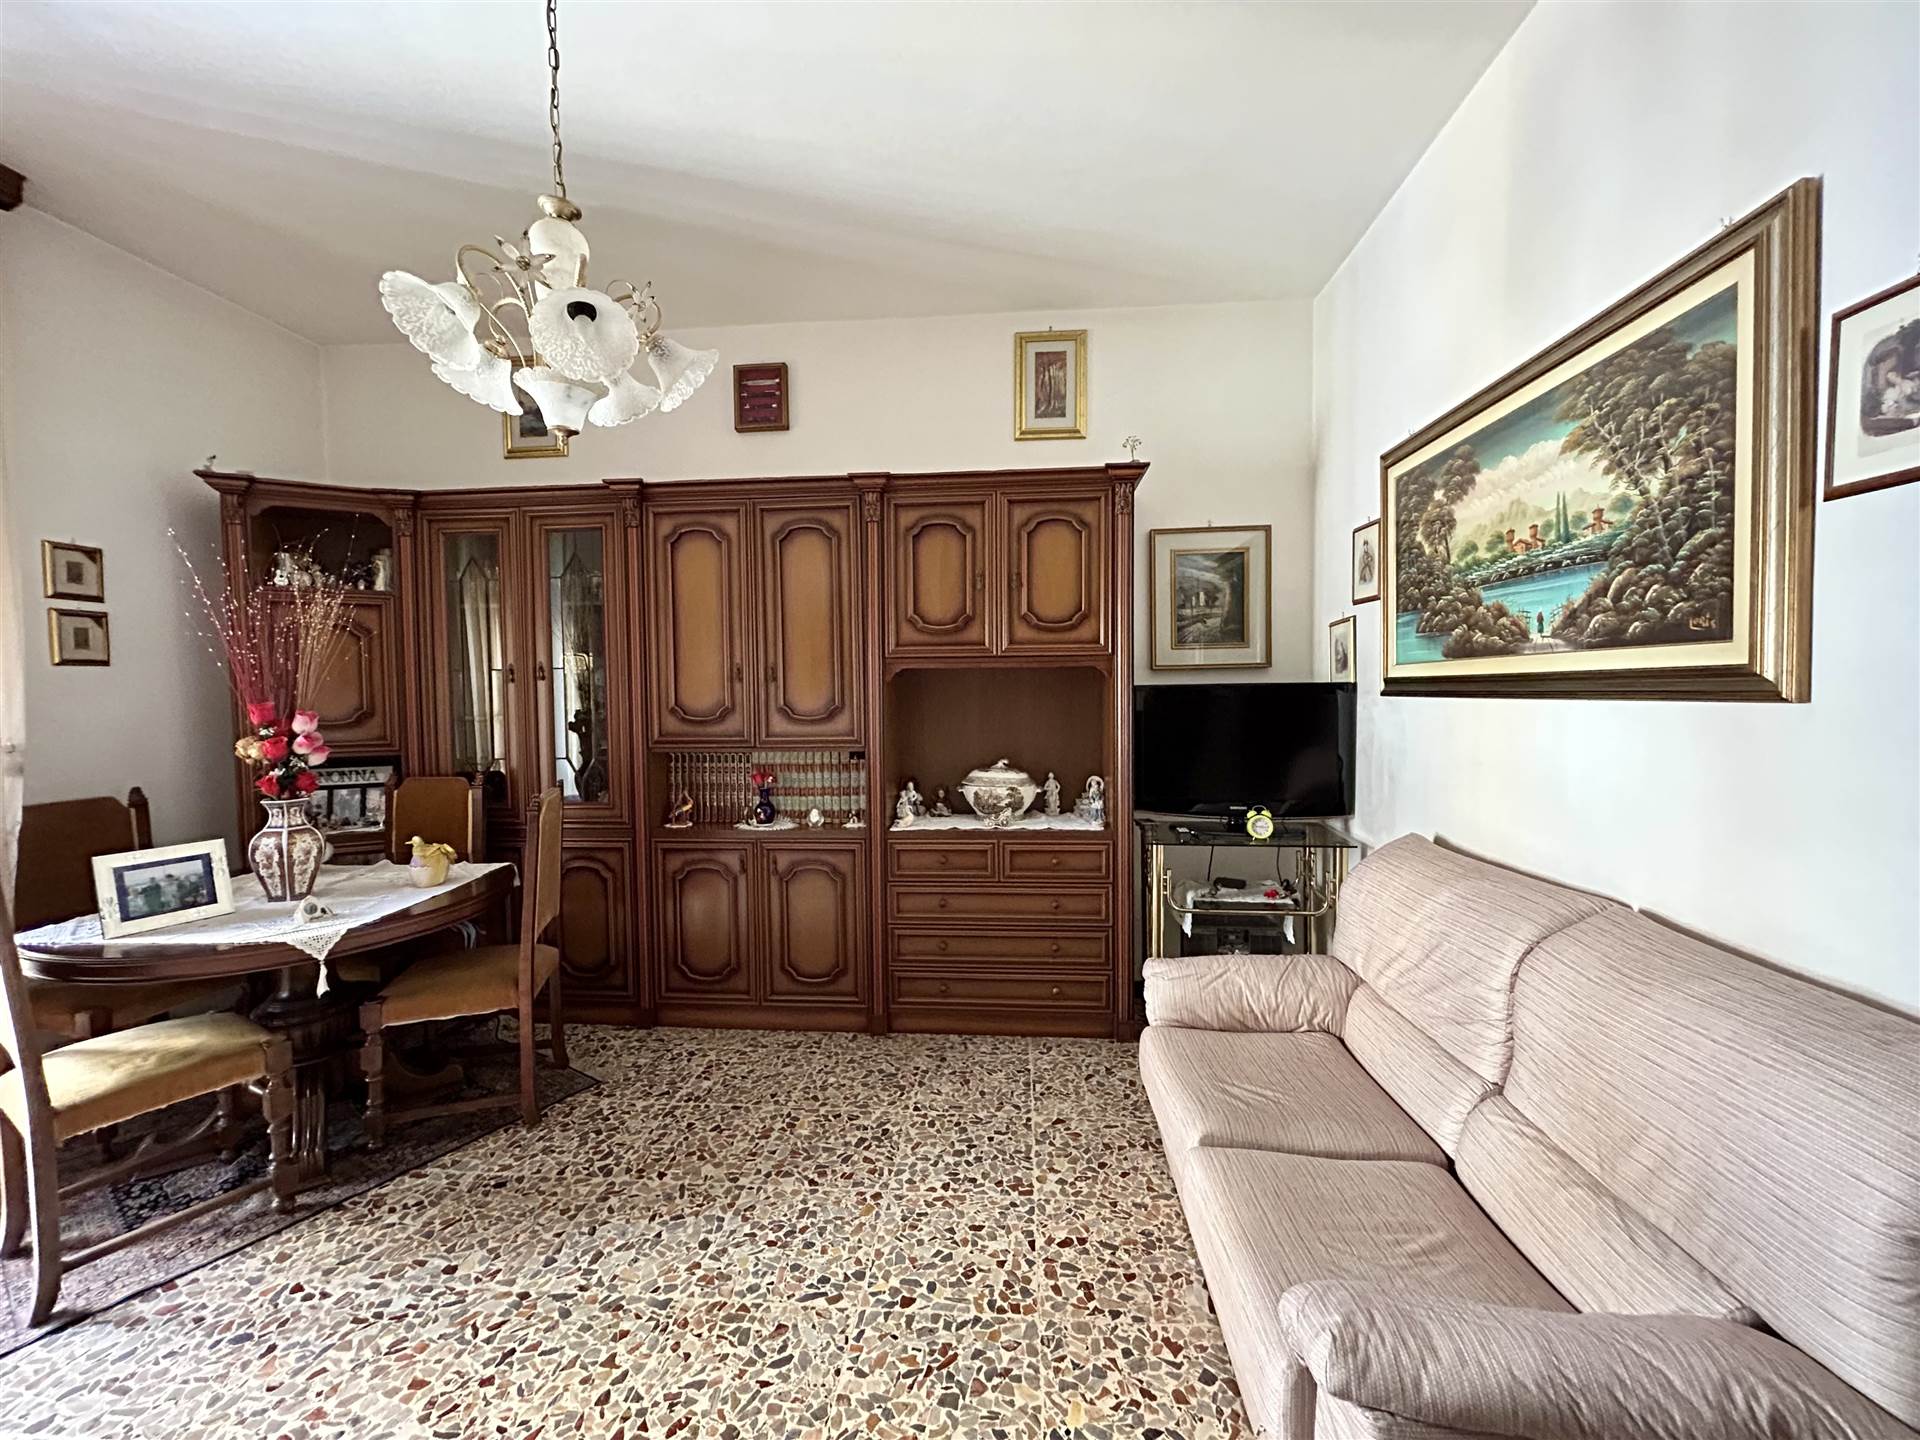 Appartamento in vendita a Piacenza Viale Dante